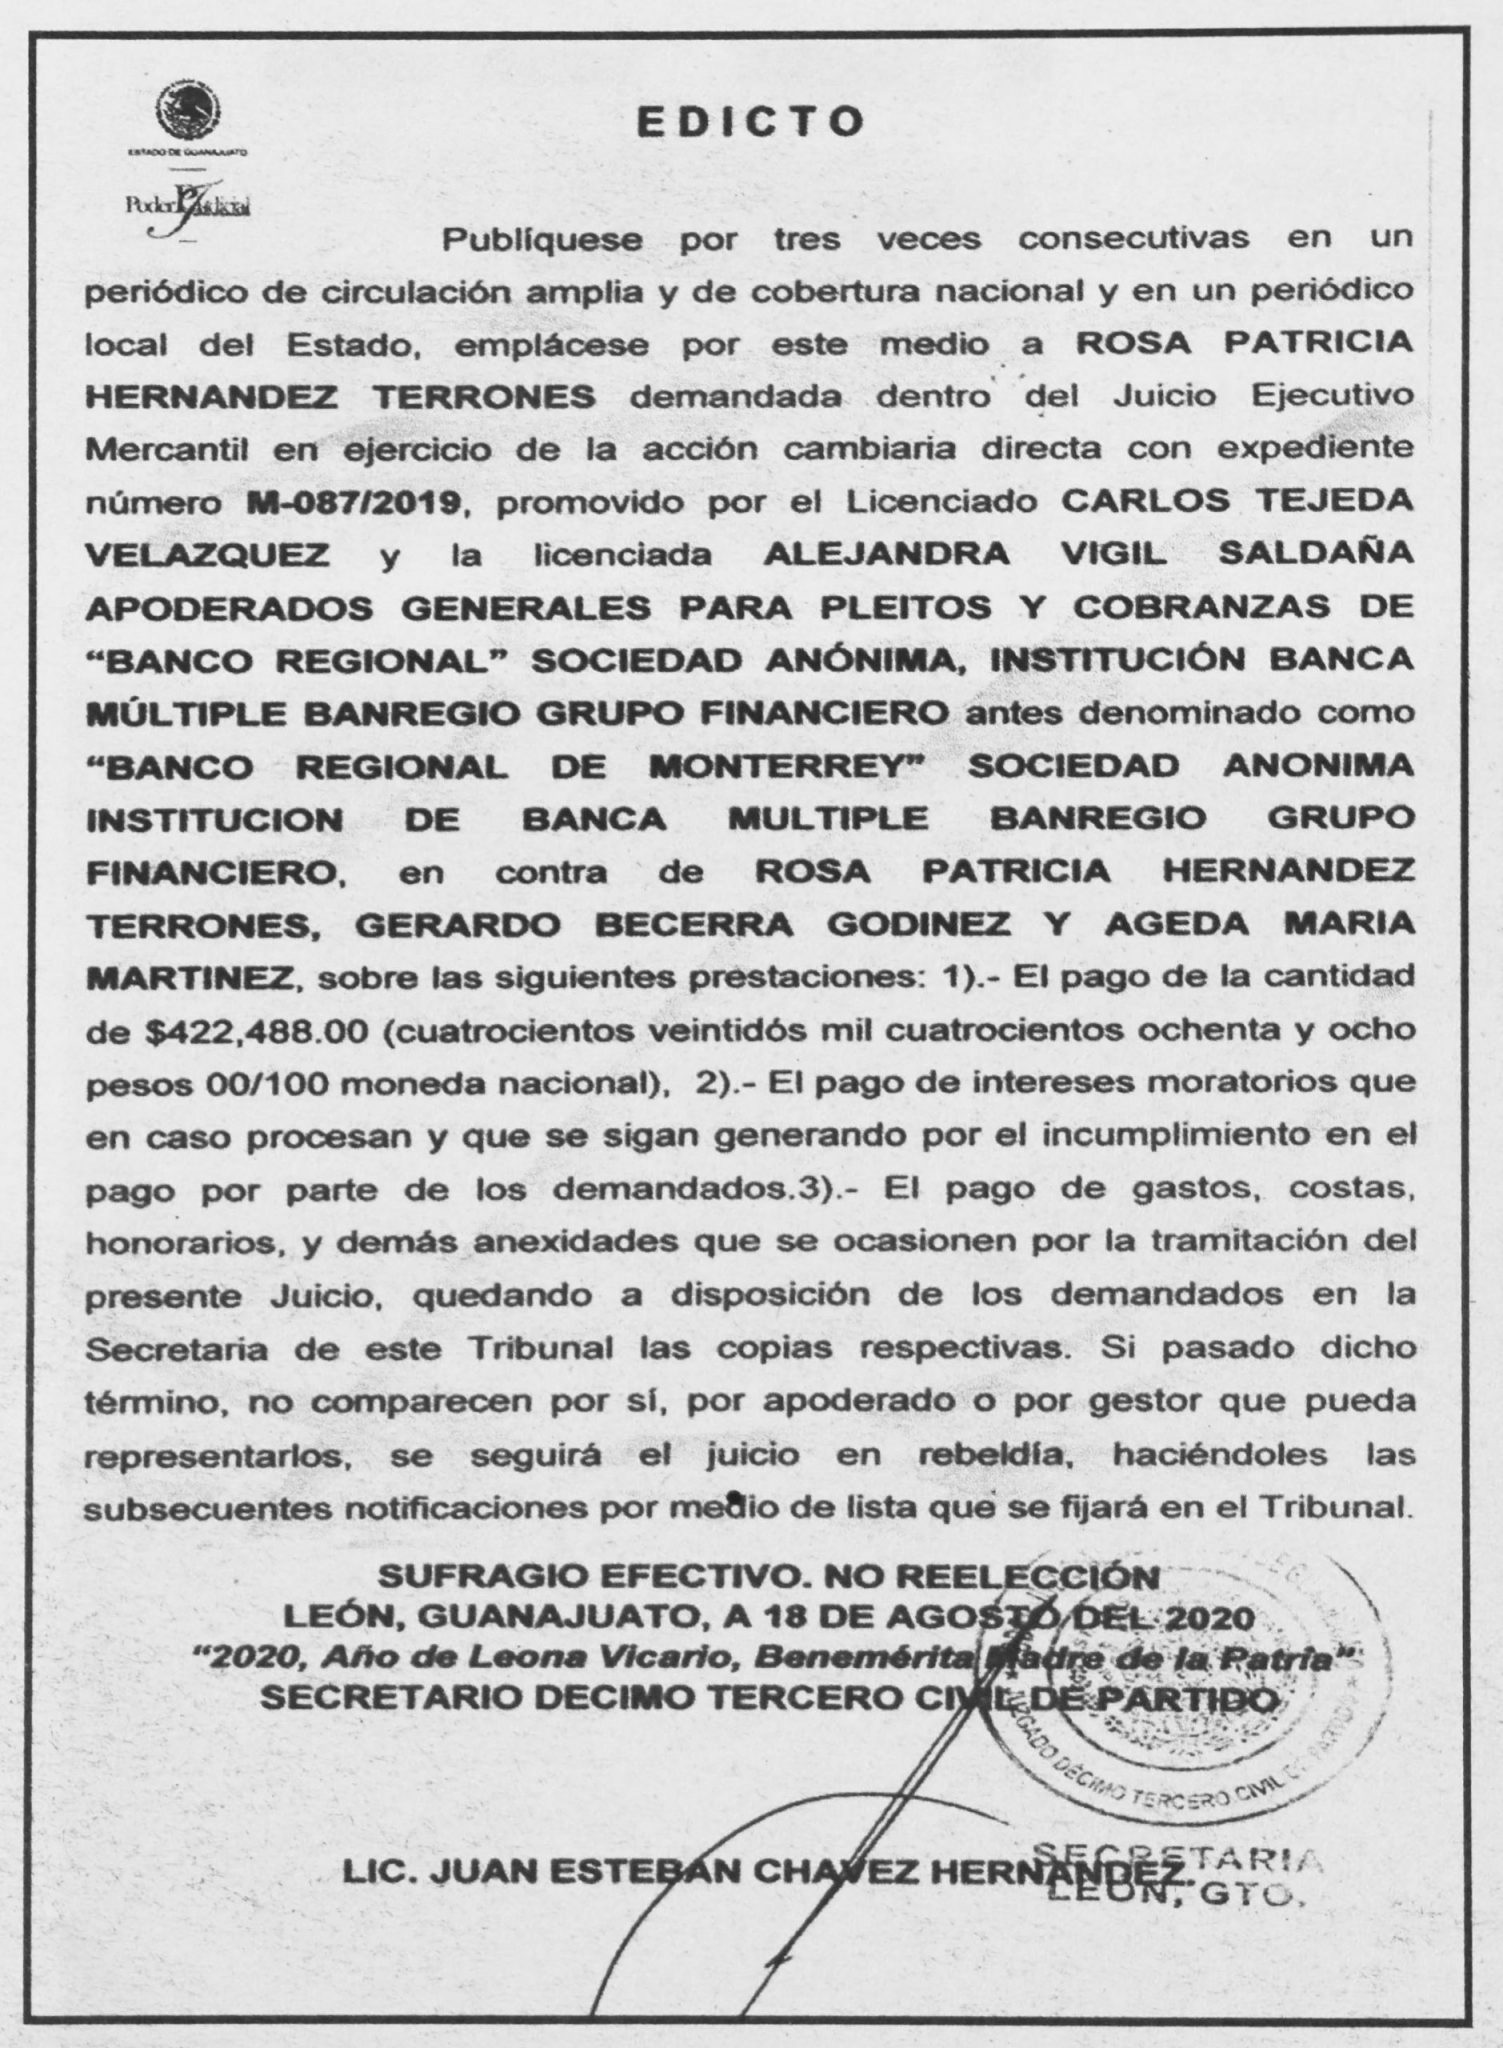 Publicar En El Heraldo De Mexico Publicar Edictos En El Herlado 5346